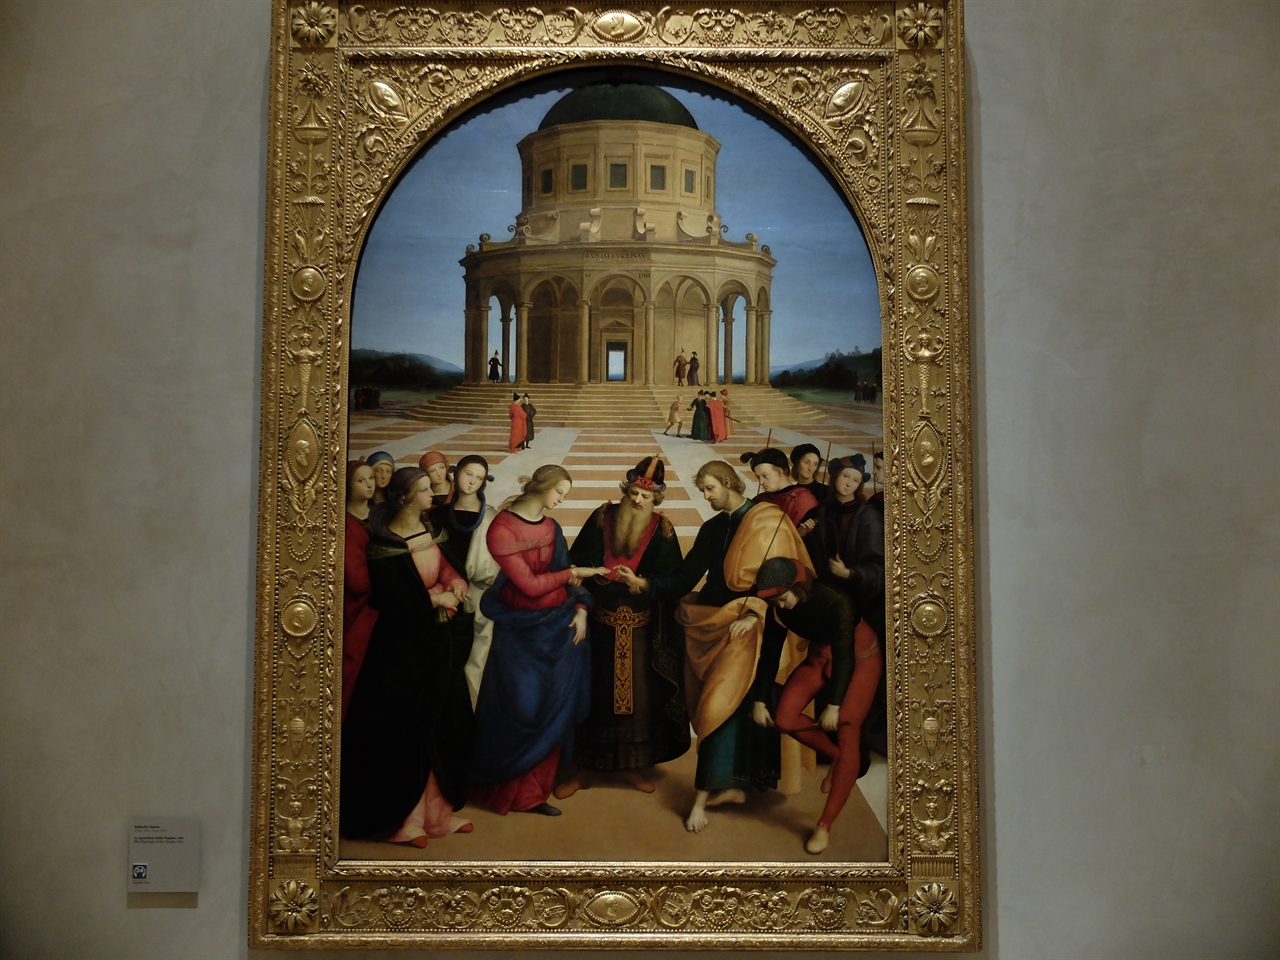 라파엘로, '성모 마리아의 결혼식', 밀라노 브레라 미술관. 갓 스무살을 넘긴 라파엘로의 이 작품은 완벽한 구도와 부드러우면서도 섬세한 묘사로 전성기 르네상스의 시작을 알리는 작품이라 할 수 있습니다.